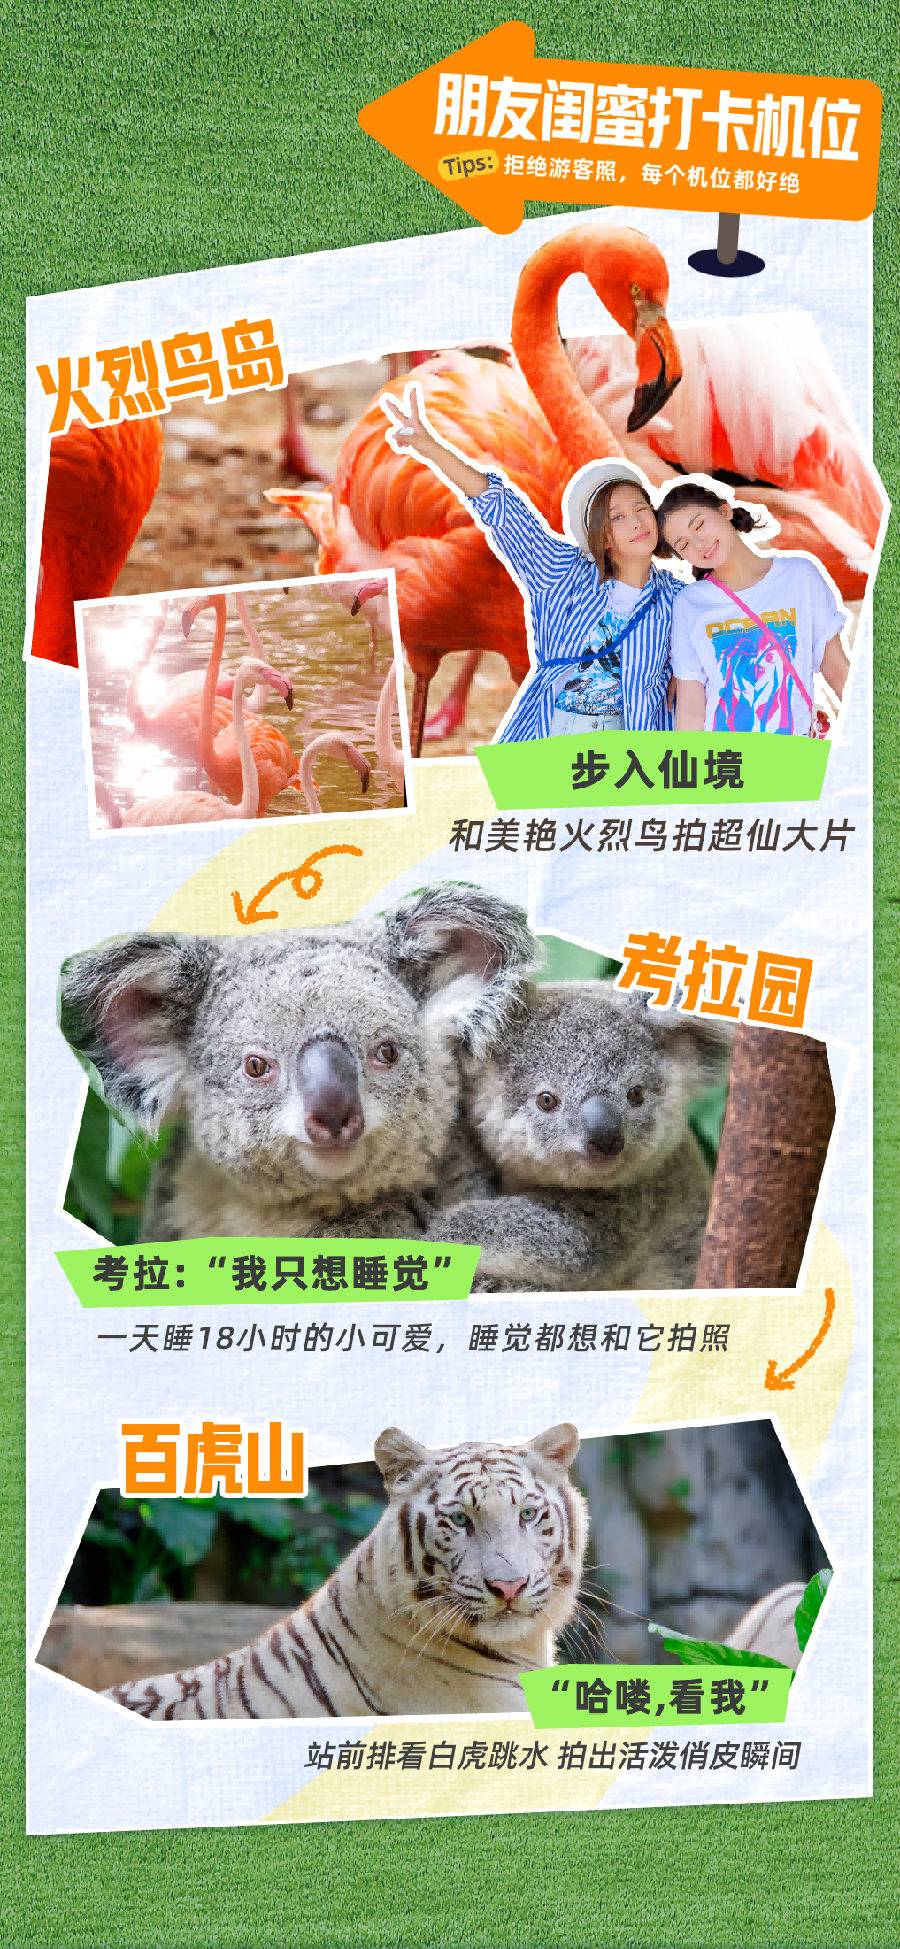 【早鸟特惠】广州长隆野生动物世界长者票（11.13-12.29）至少提前3天预订